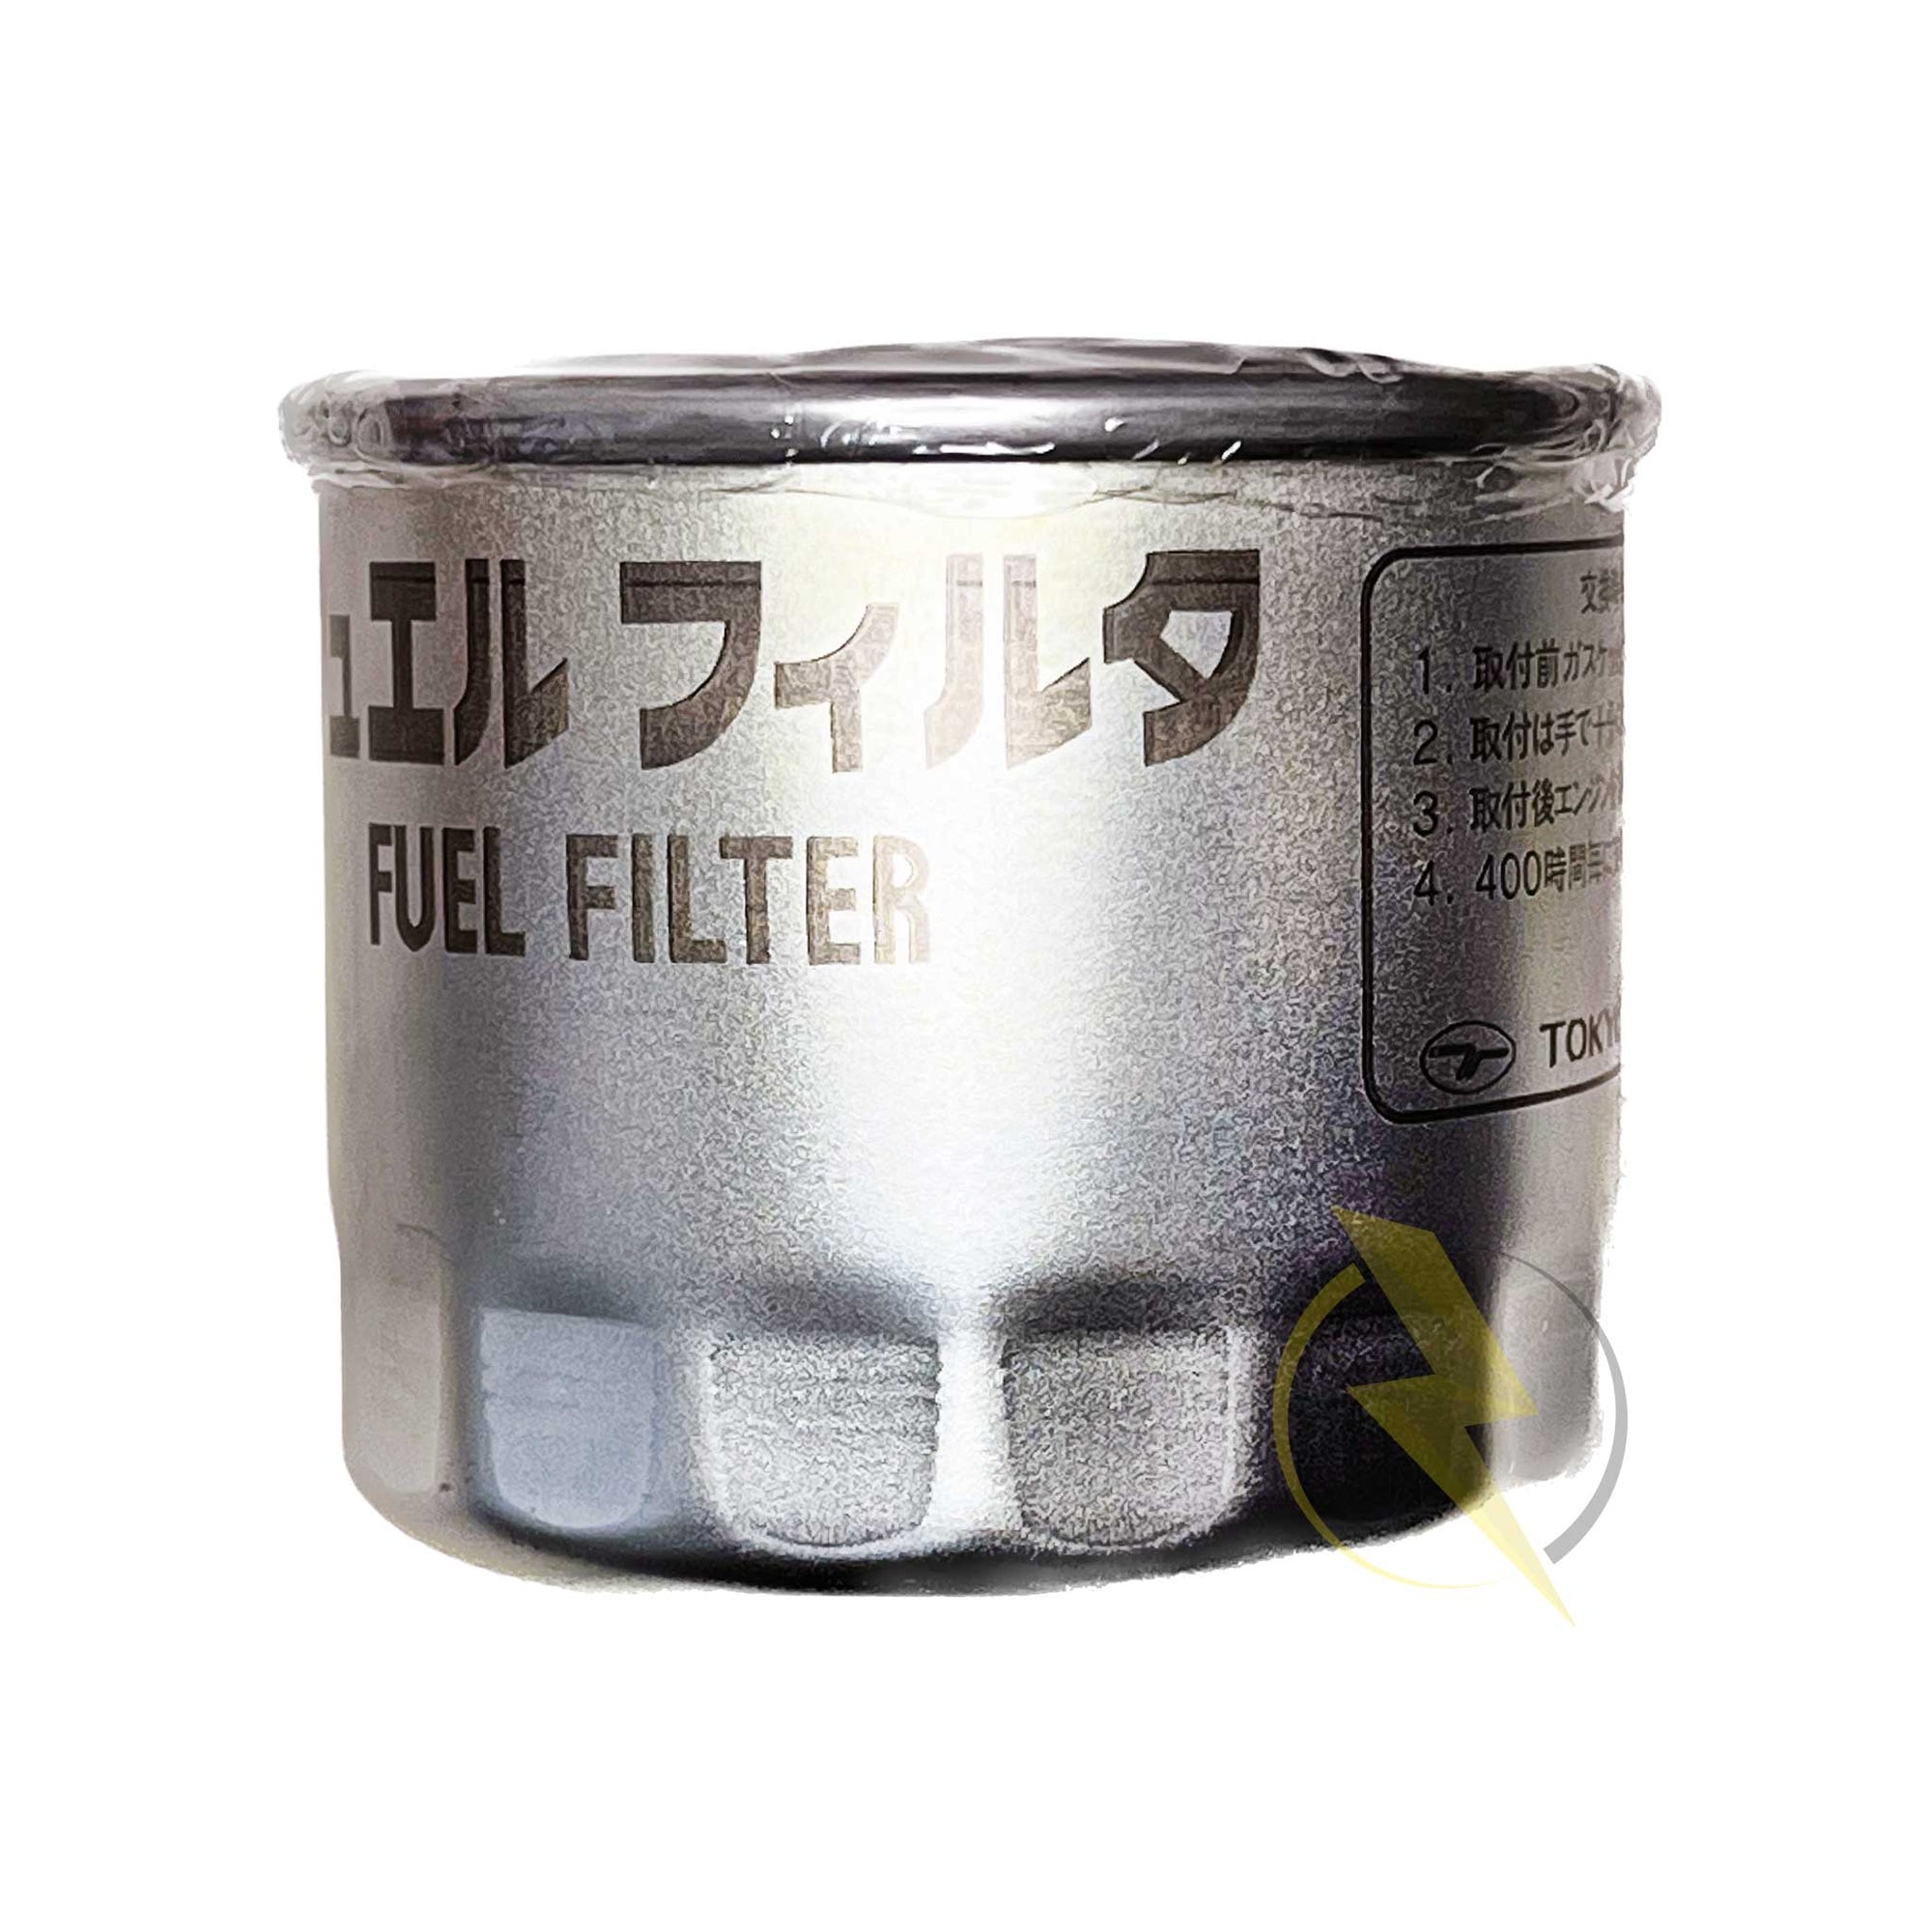 Replacement Kubota D04 Fuel Filter for a PowerTech Diesel Generator